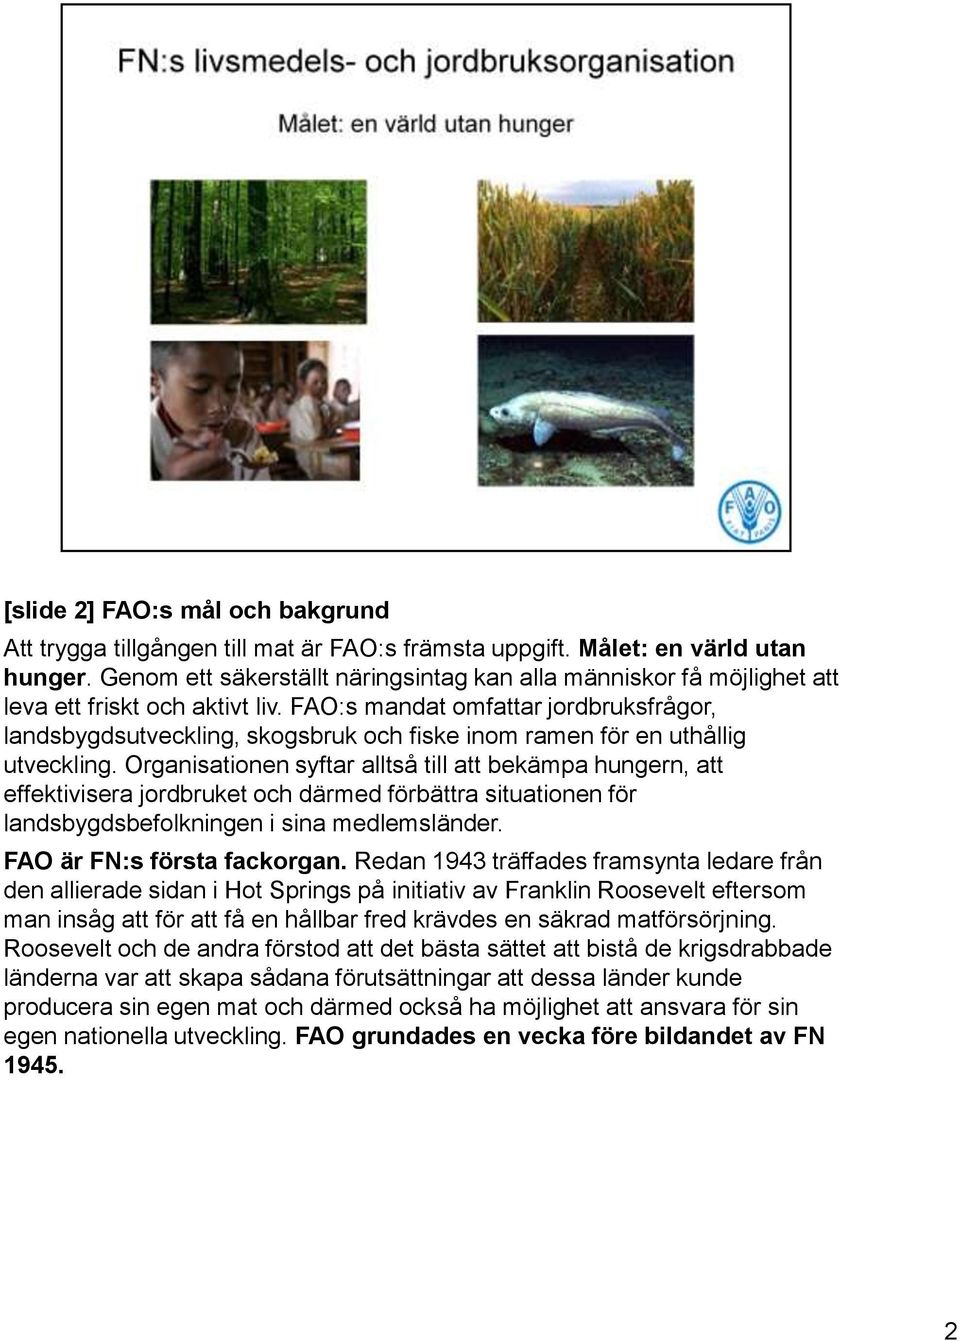 FAO:s mandat omfattar jordbruksfrågor, landsbygdsutveckling, skogsbruk och fiske inom ramen för en uthållig utveckling.